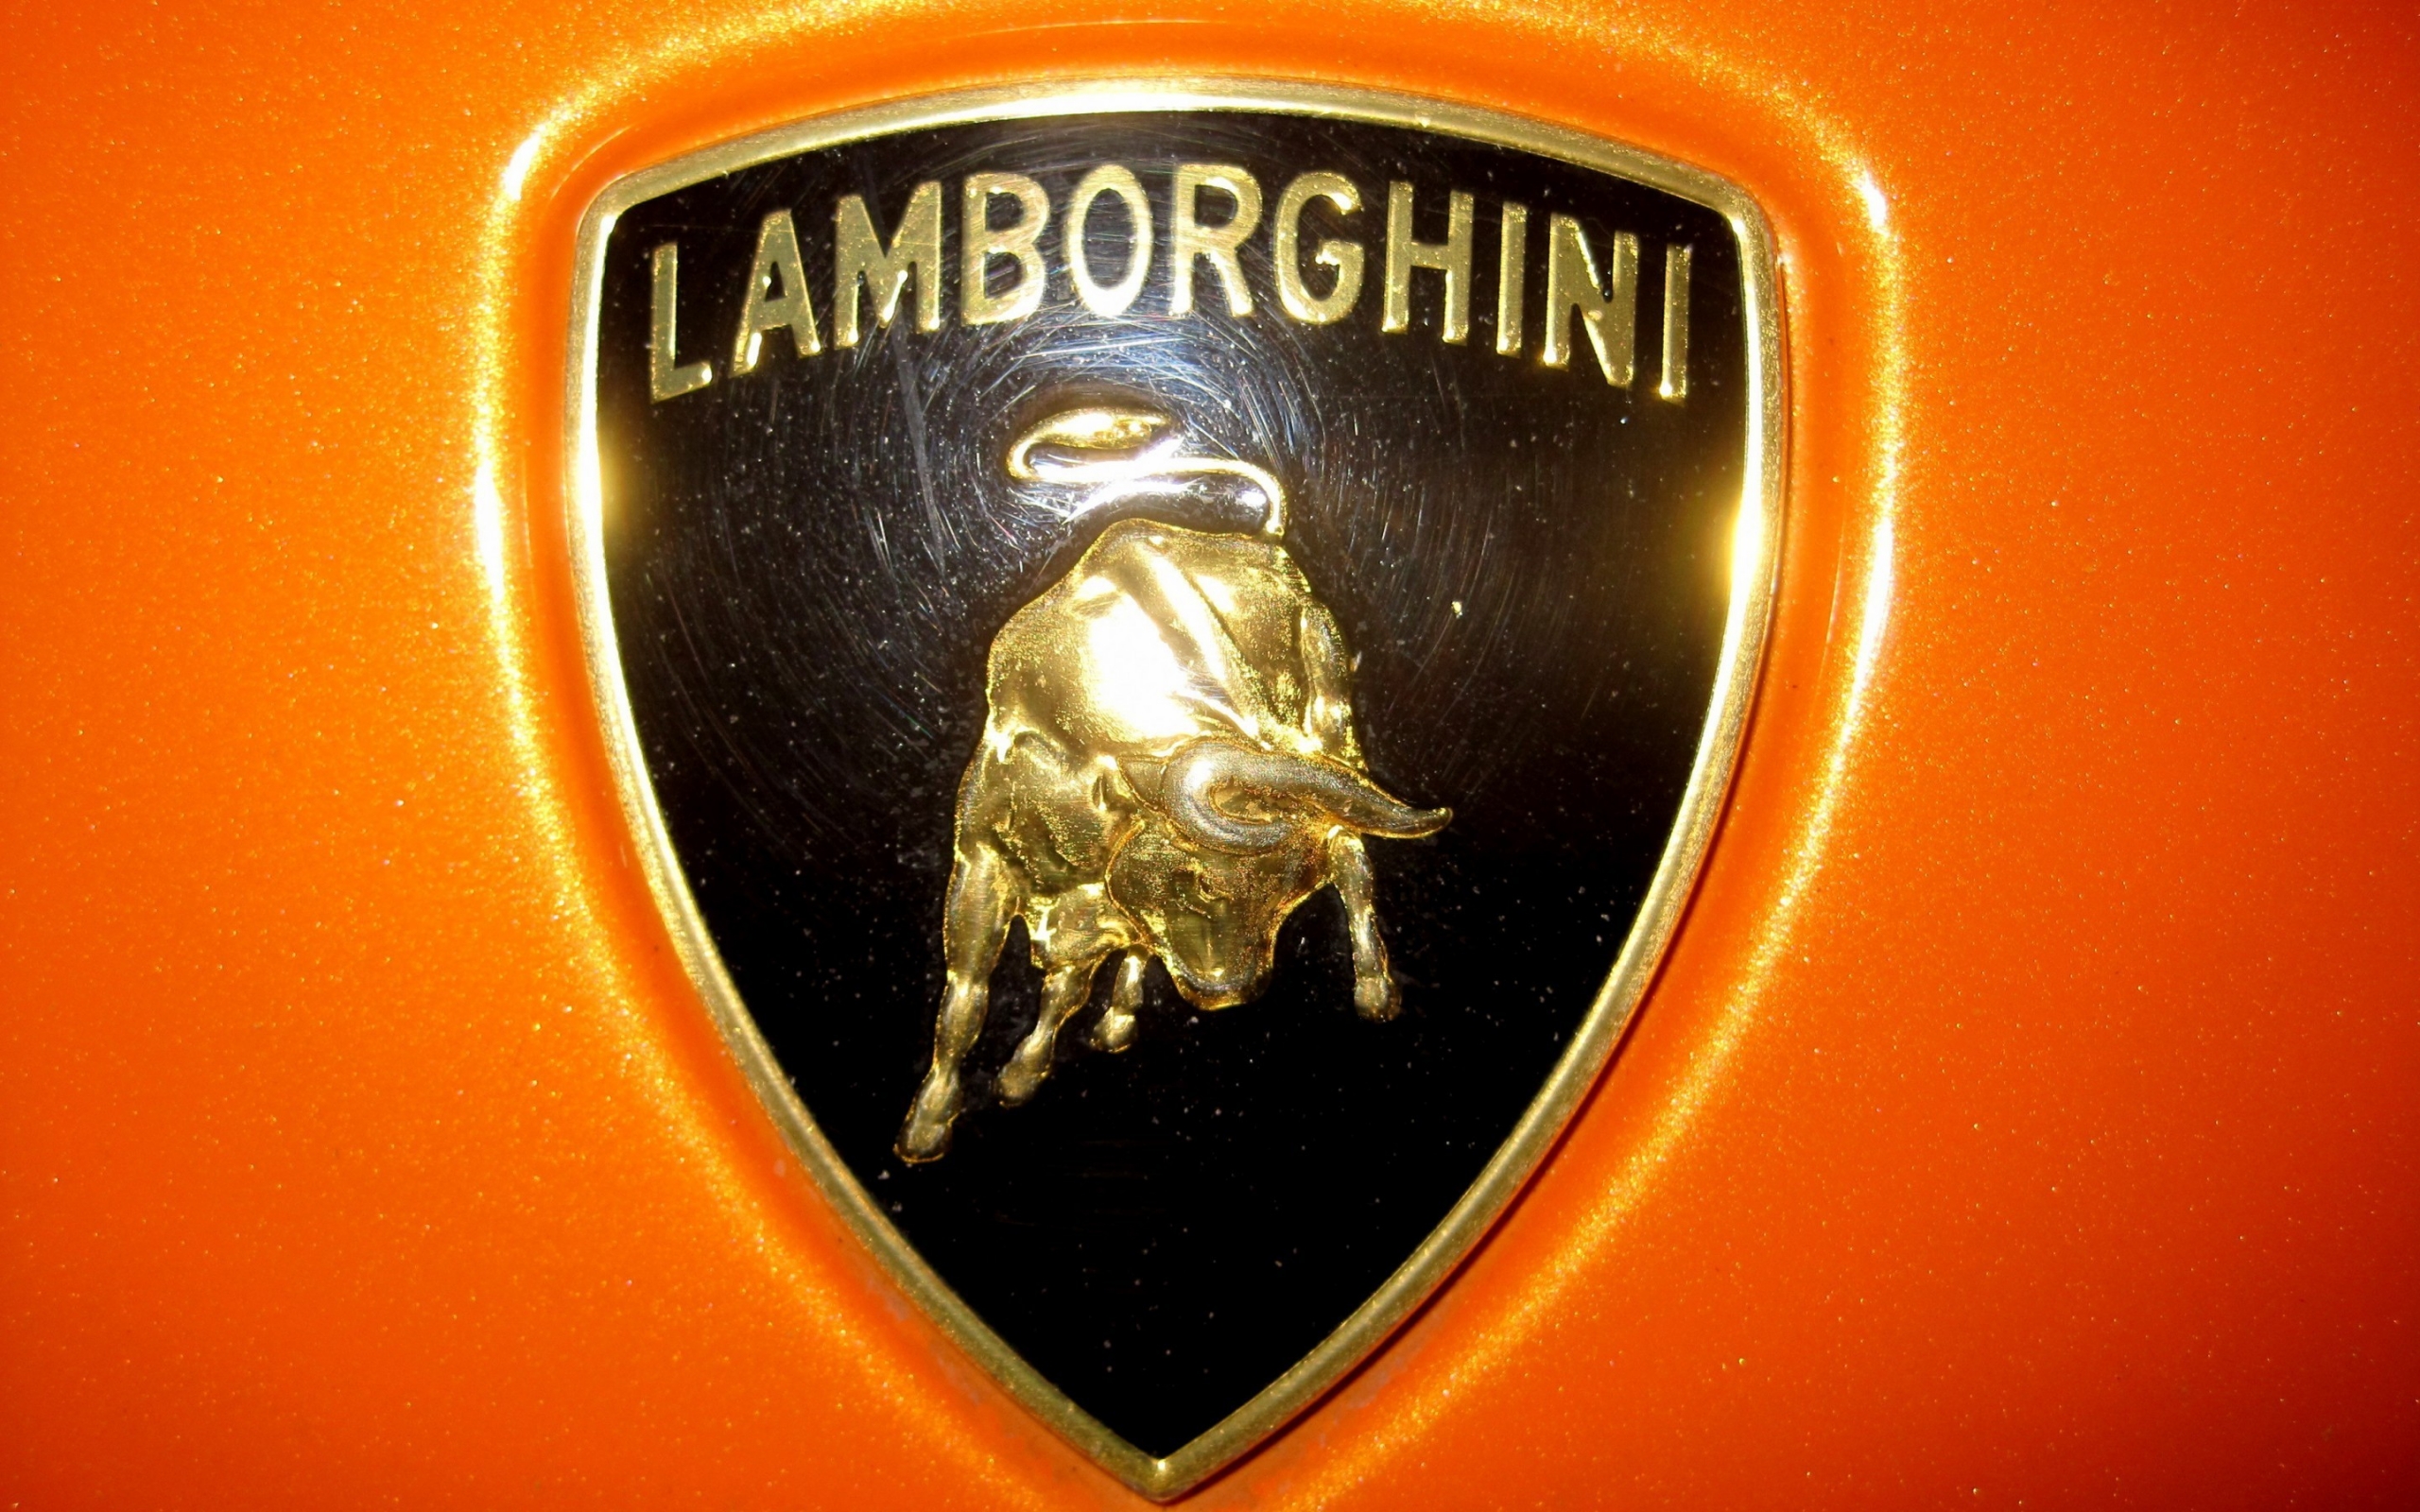 Lamborghini logo for 2560 x 1600 widescreen resolution